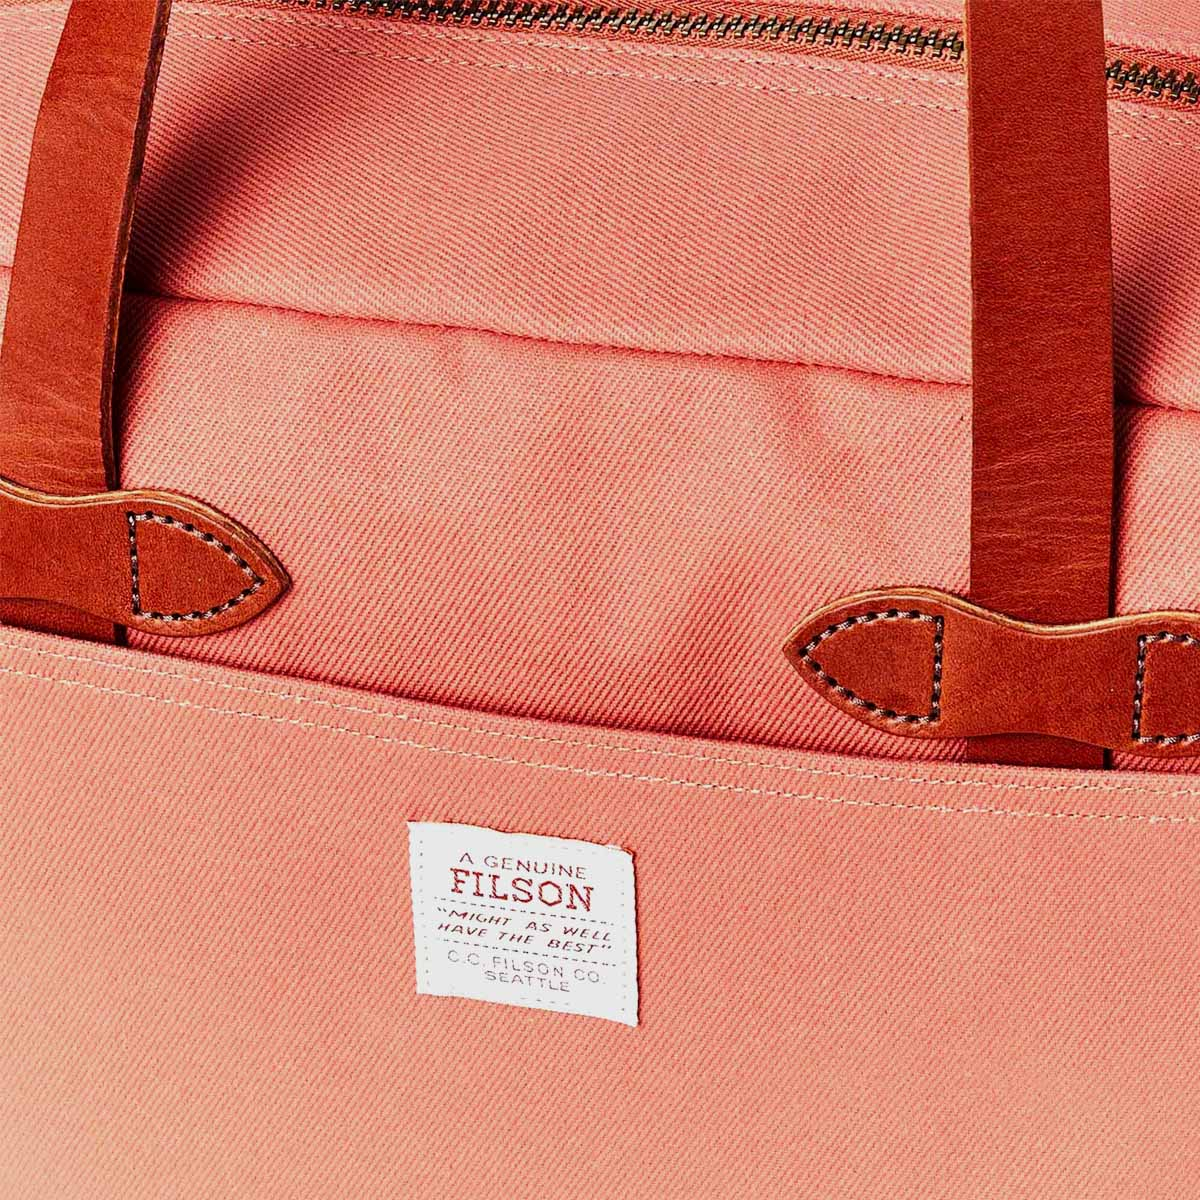 Filson Rugged Twill Tote Bag With Zipper Cedar Red, für Männer und Frauen mit Stil und Liebe zur Qualität